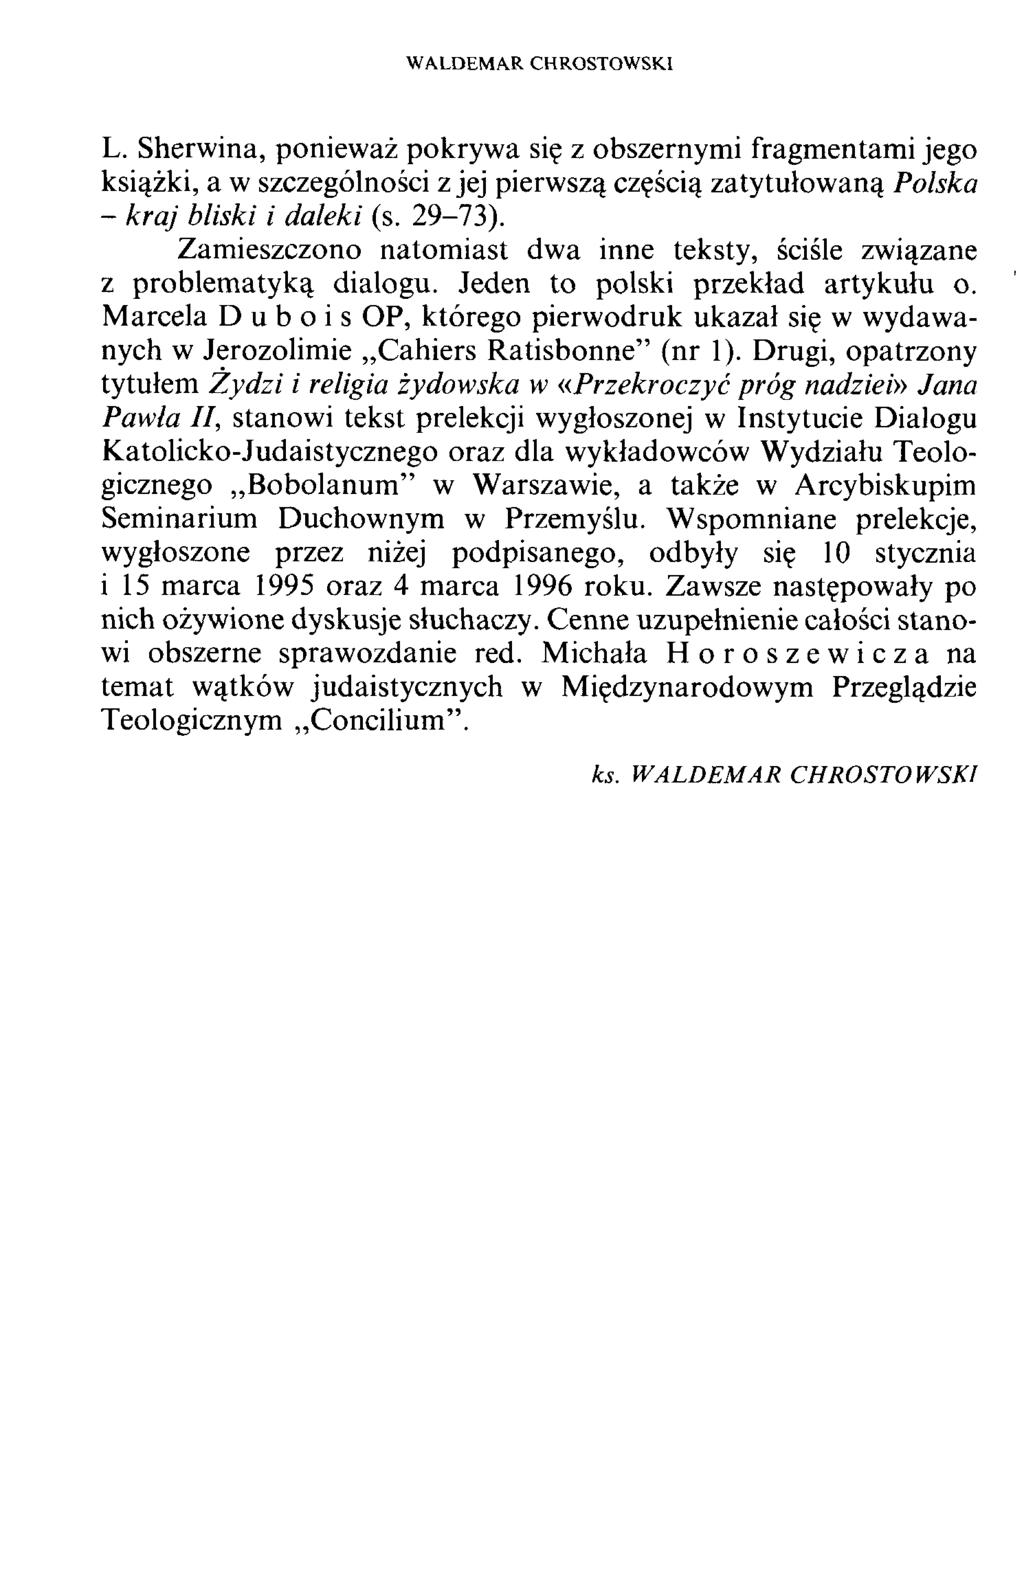 WALDEMAR CHROSTOWSKI L. Sherwina, ponieważ pokrywa się z obszernymi fragmentami jego książki, a w szczególności z jej pierwszą częścią zatytułowaną Polska - kraj bliski i daleki (s. 29-73).